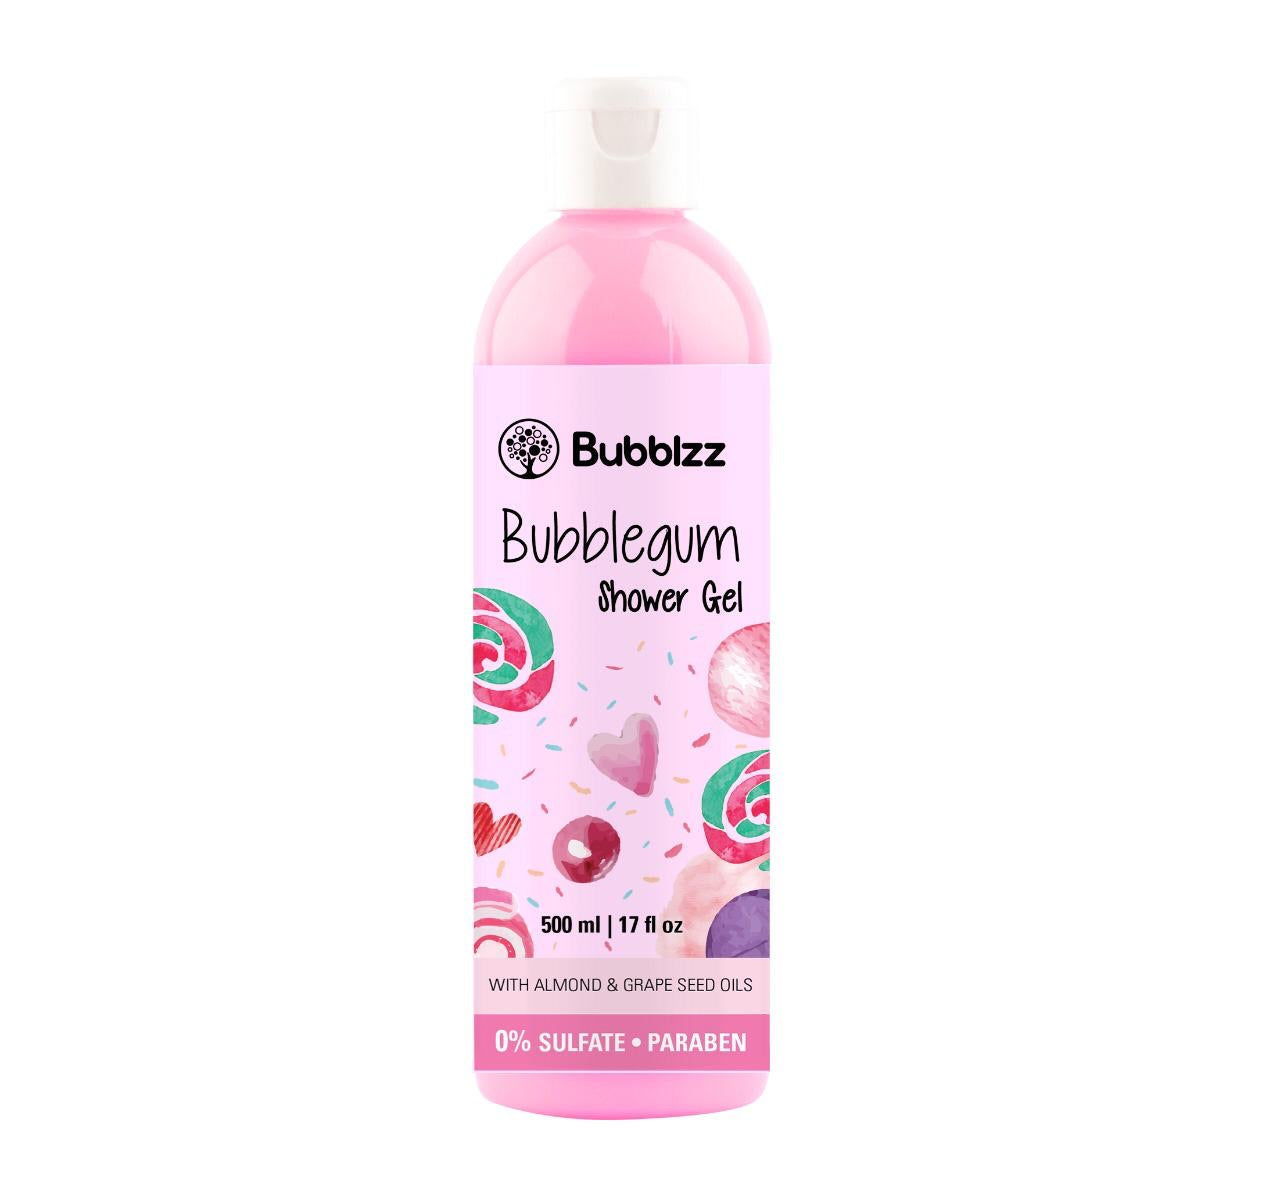 Bubblegum Shower Gel